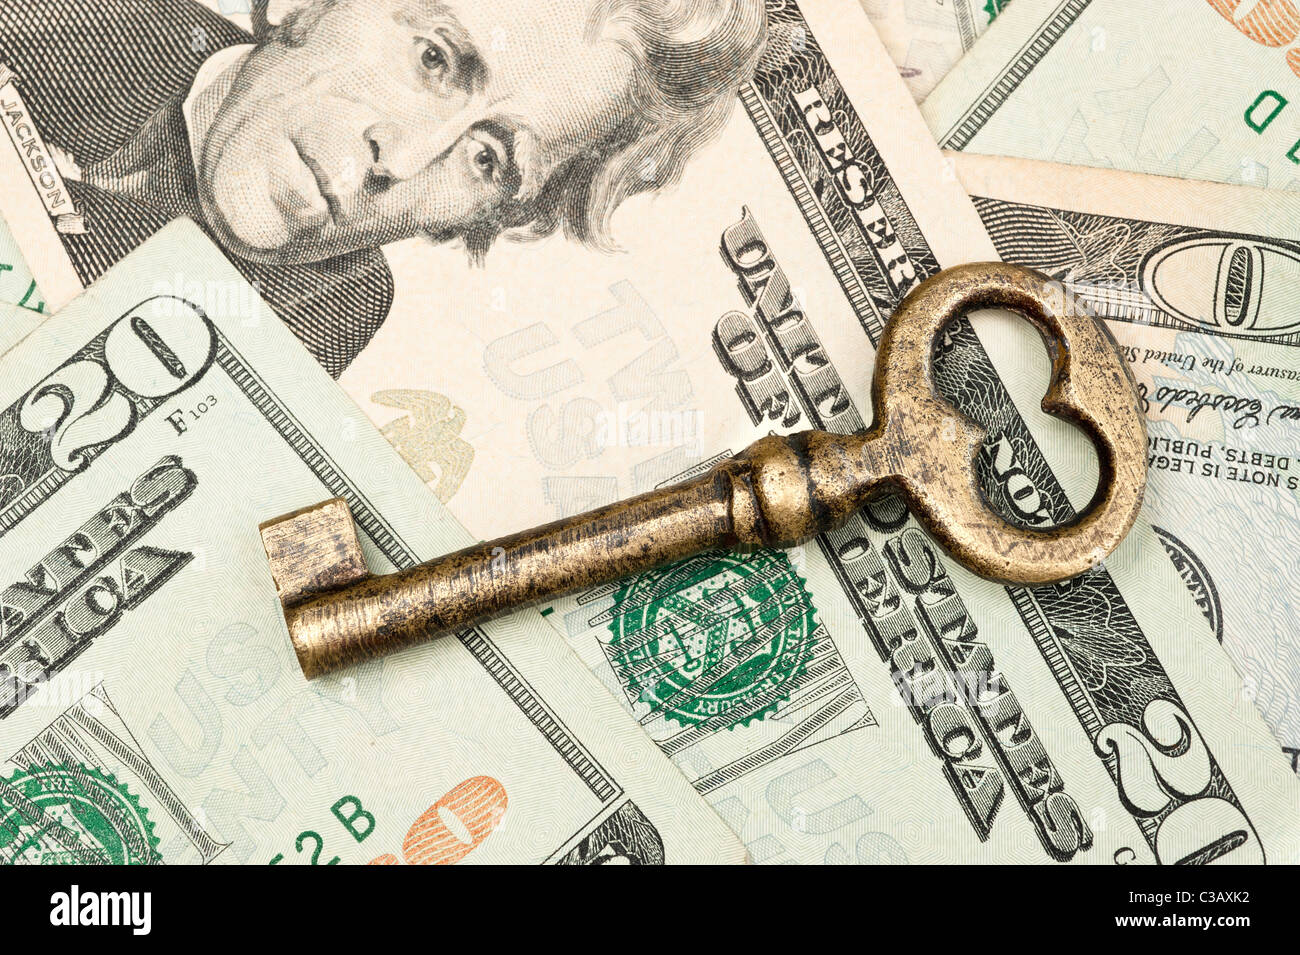 Ein Skelett-Schlüssel auf Bargeld folgert Wohlstand, Reichtum, Investitionen und Gesamterfolg. Stockfoto